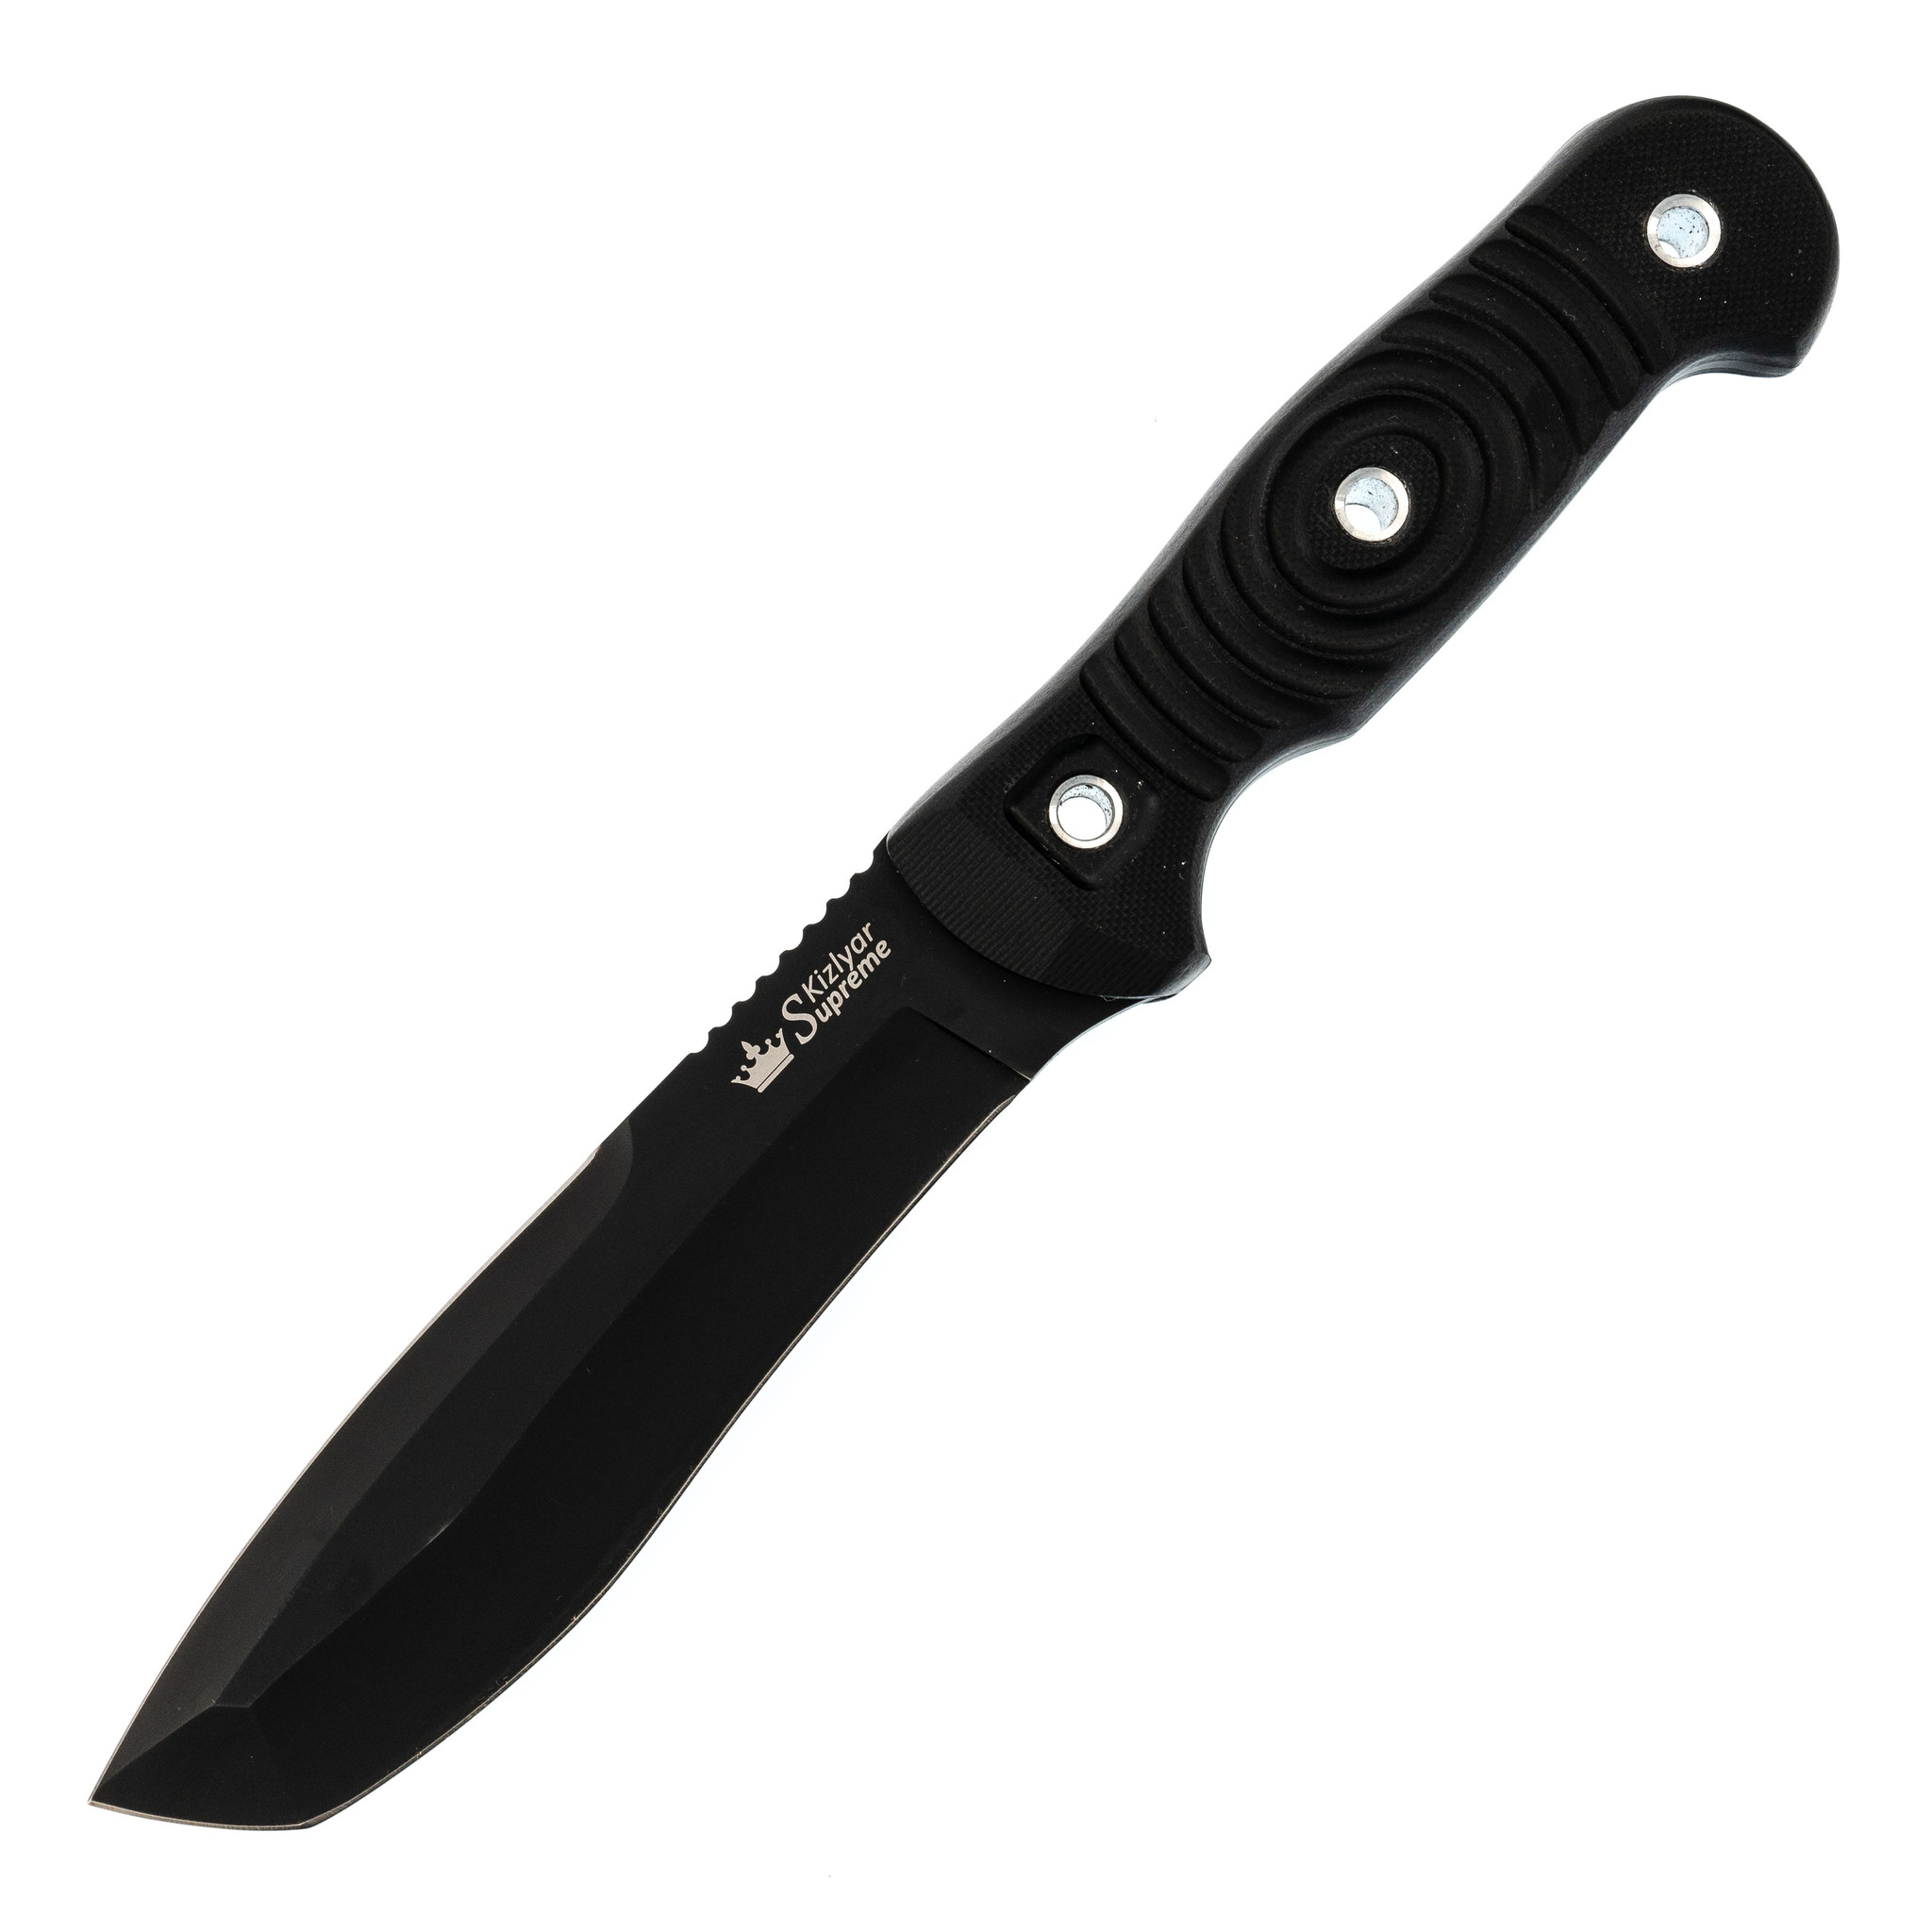 Нож Vendetta AUS-8 BT, G10, Kizlyar Supreme ножницы парикмахерские с упором лезвие 7 см салатовый серебристый